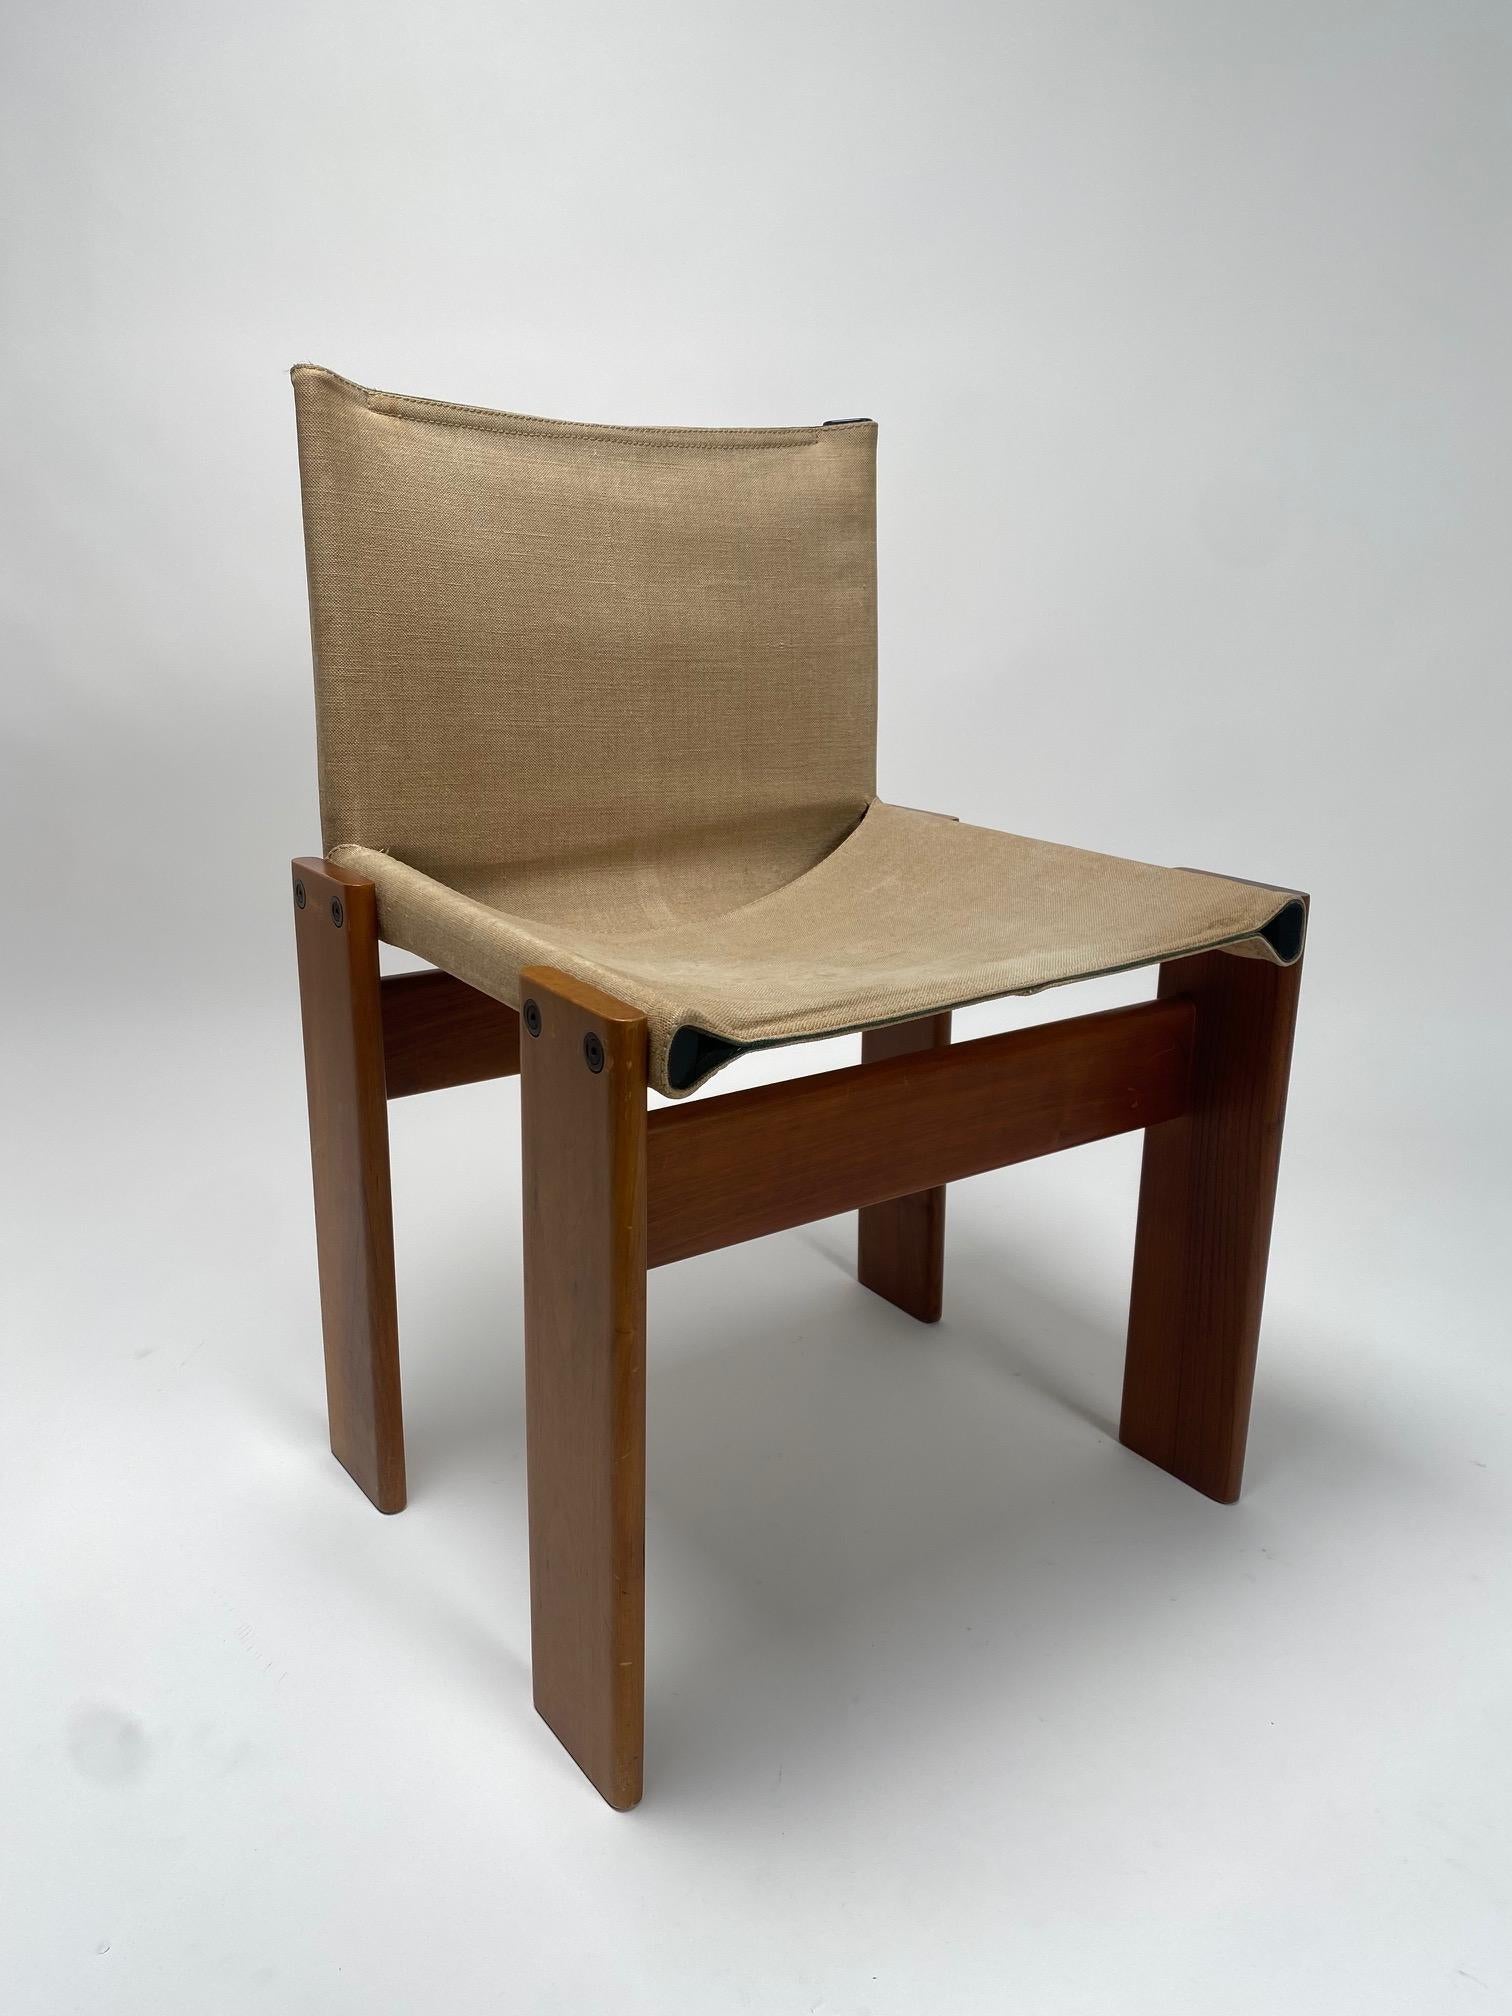 Ensemble de 6 chaises en toile et bois modèle Monk, Afra & Tobia Scarpa pour Molteni, Italie

C'est l'un des modèles les plus emblématiques et les plus raffinés du célèbre couple d'architectes et de designers italiens Afra & Tobia Scarpa. Des